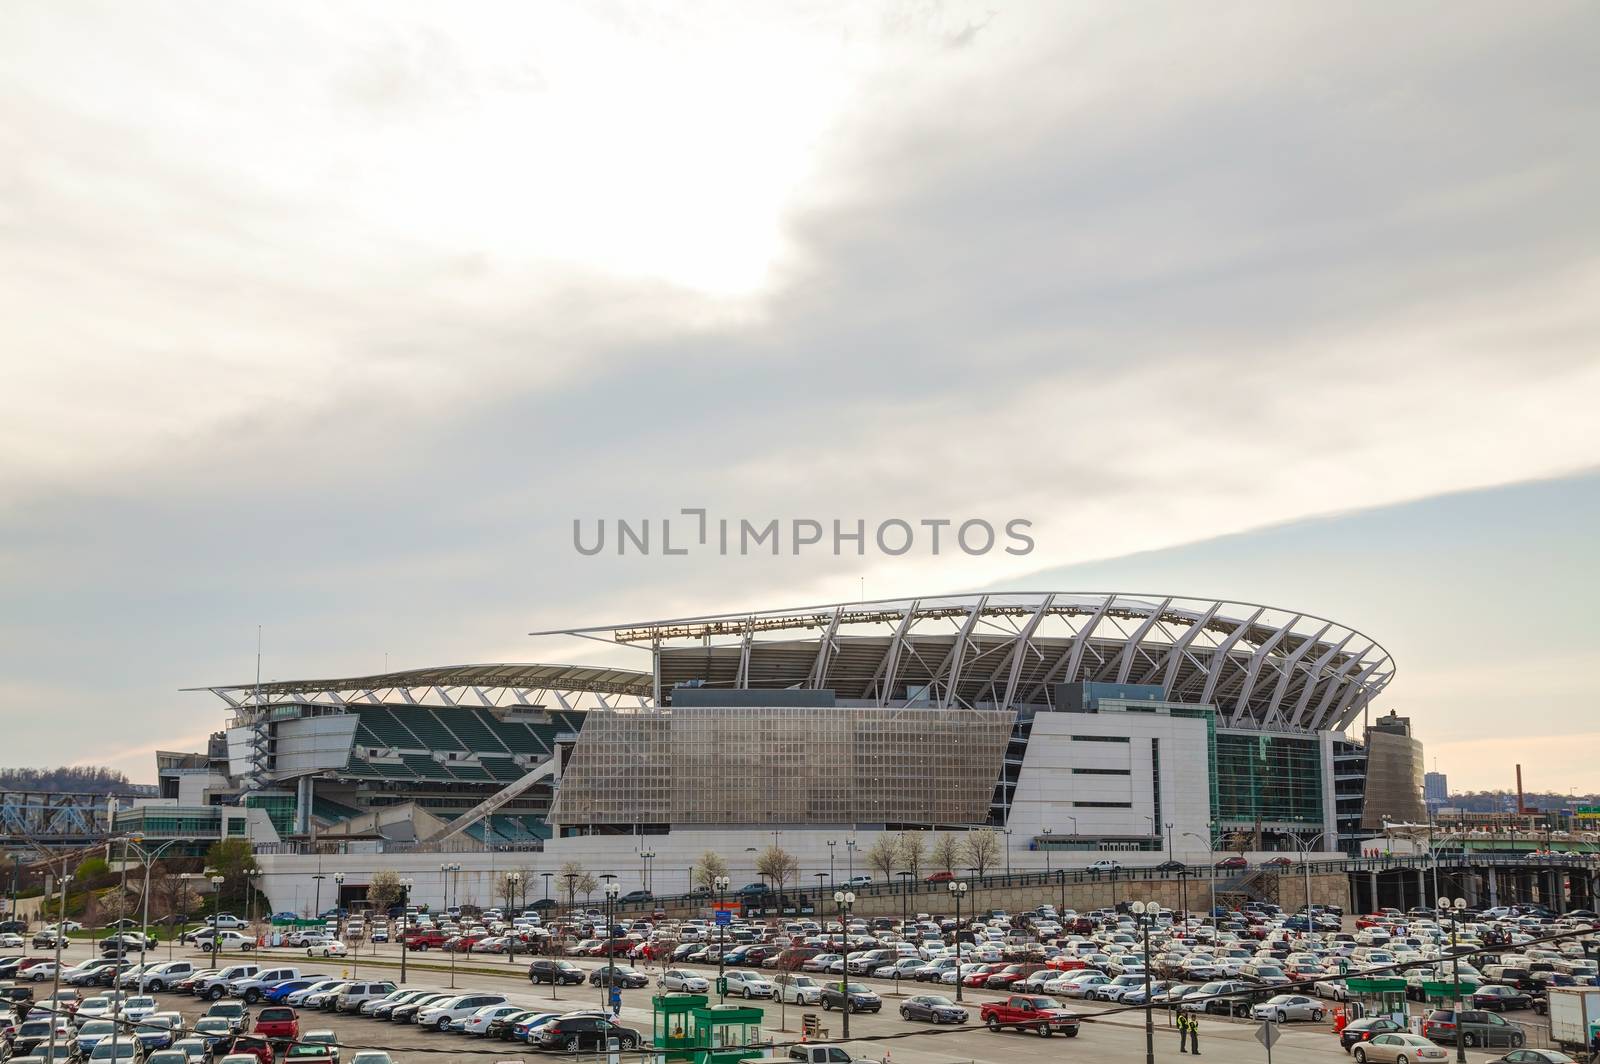 Paul Brown stadium in Cincinnati, Ohio by AndreyKr